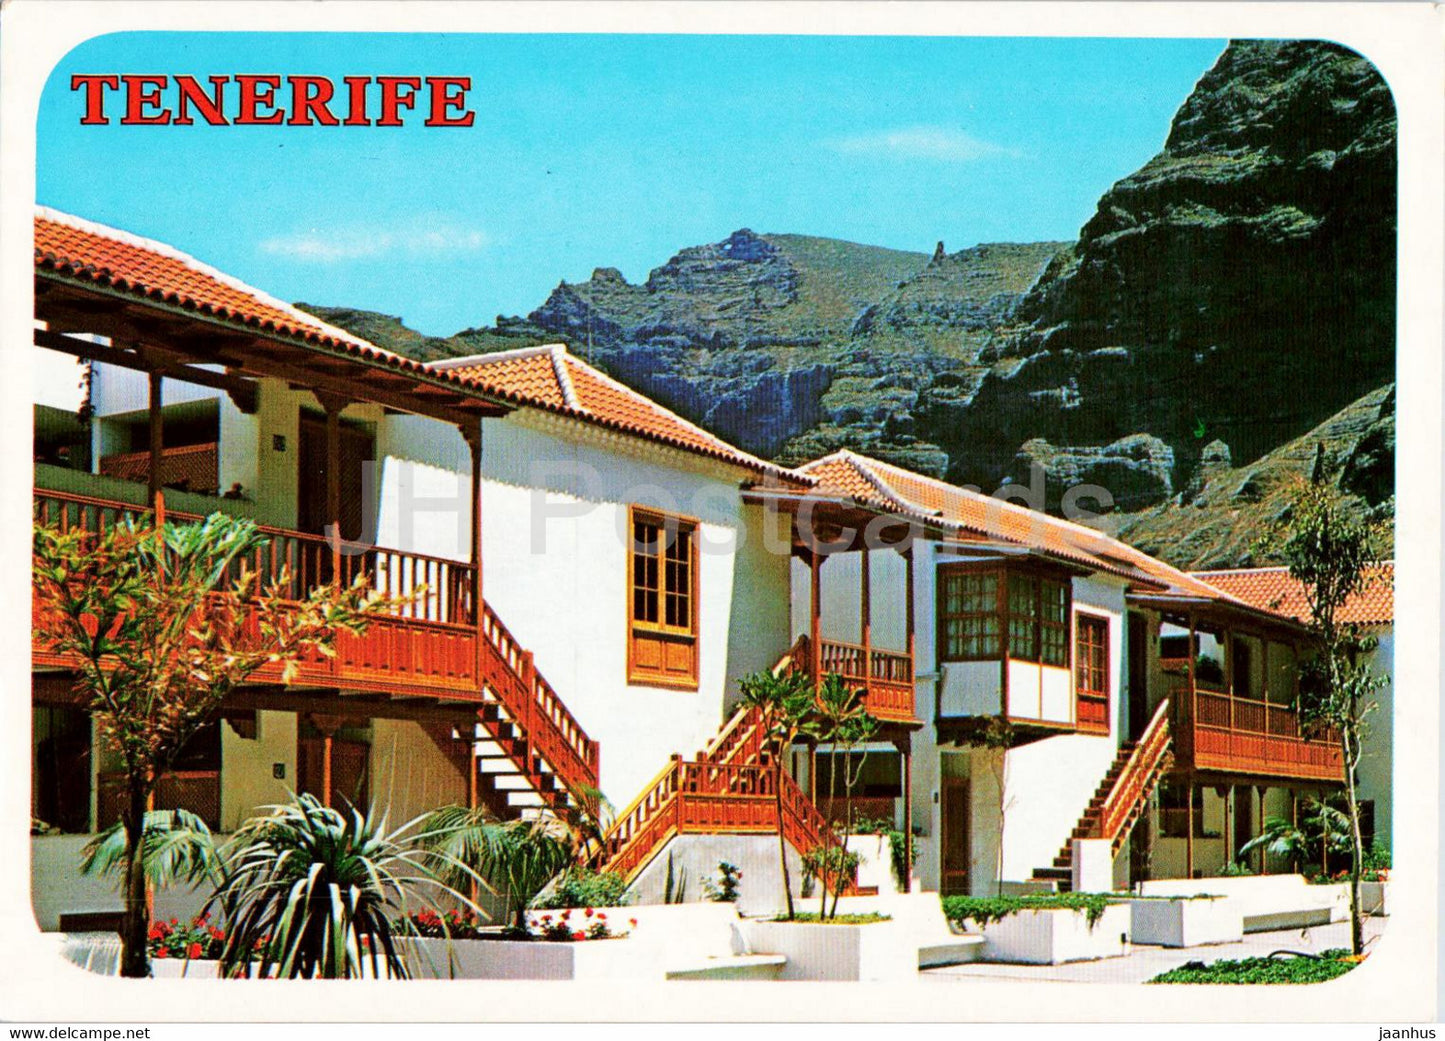 Los Gigantes - Arquitectura Canaria - architecture - Tenerife - Gran Canaria - 6366 - Spain - unused - JH Postcards